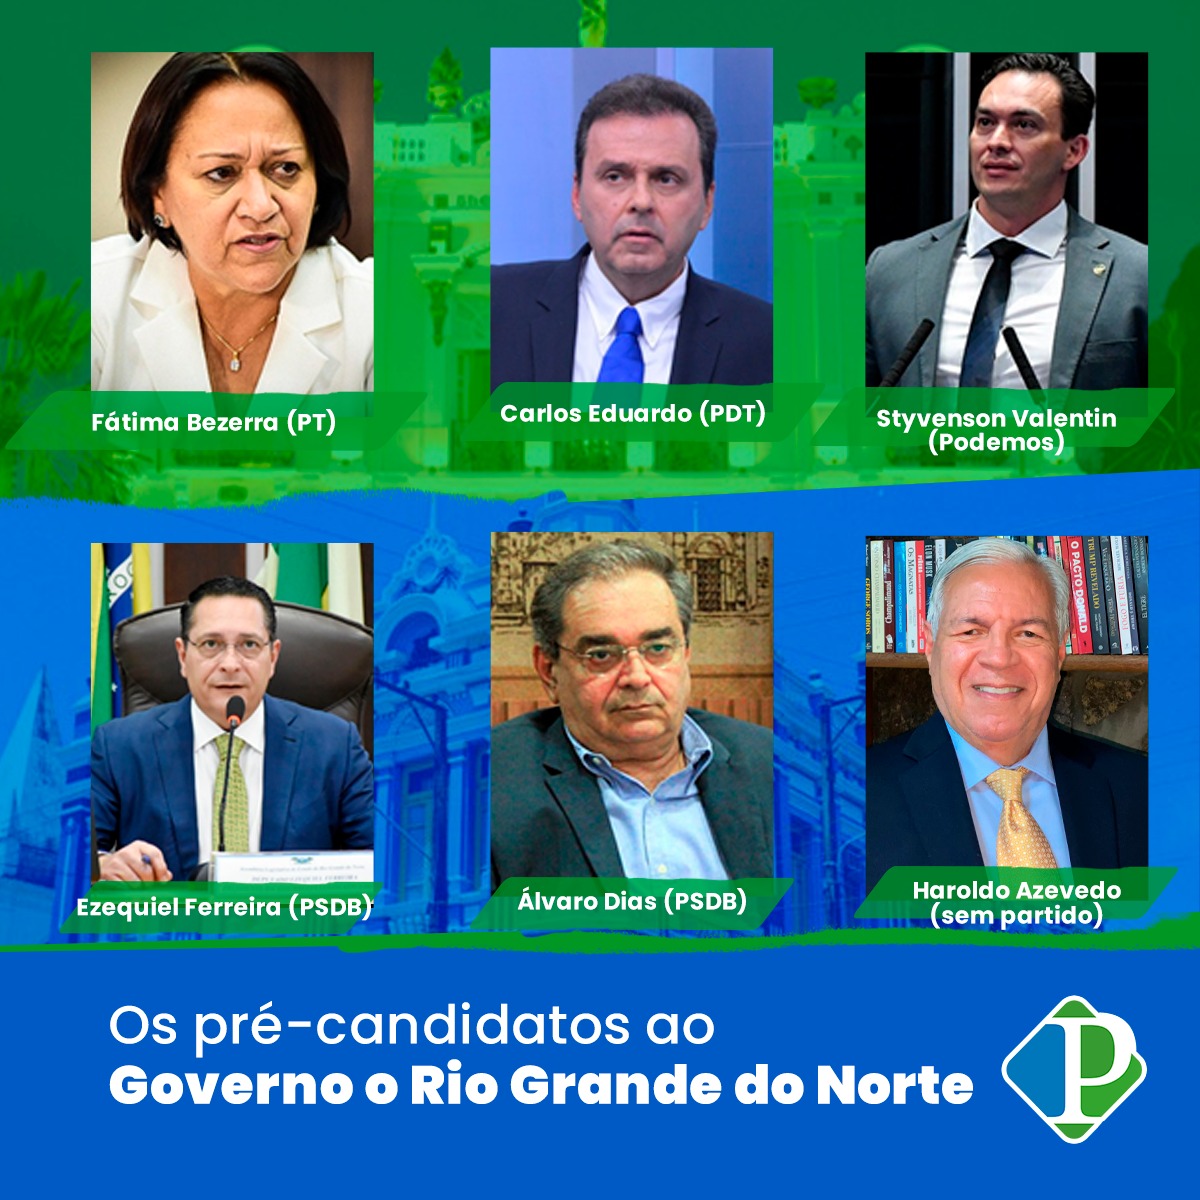 Os pré-candidatos ao Governo o Rio Grande do Norte